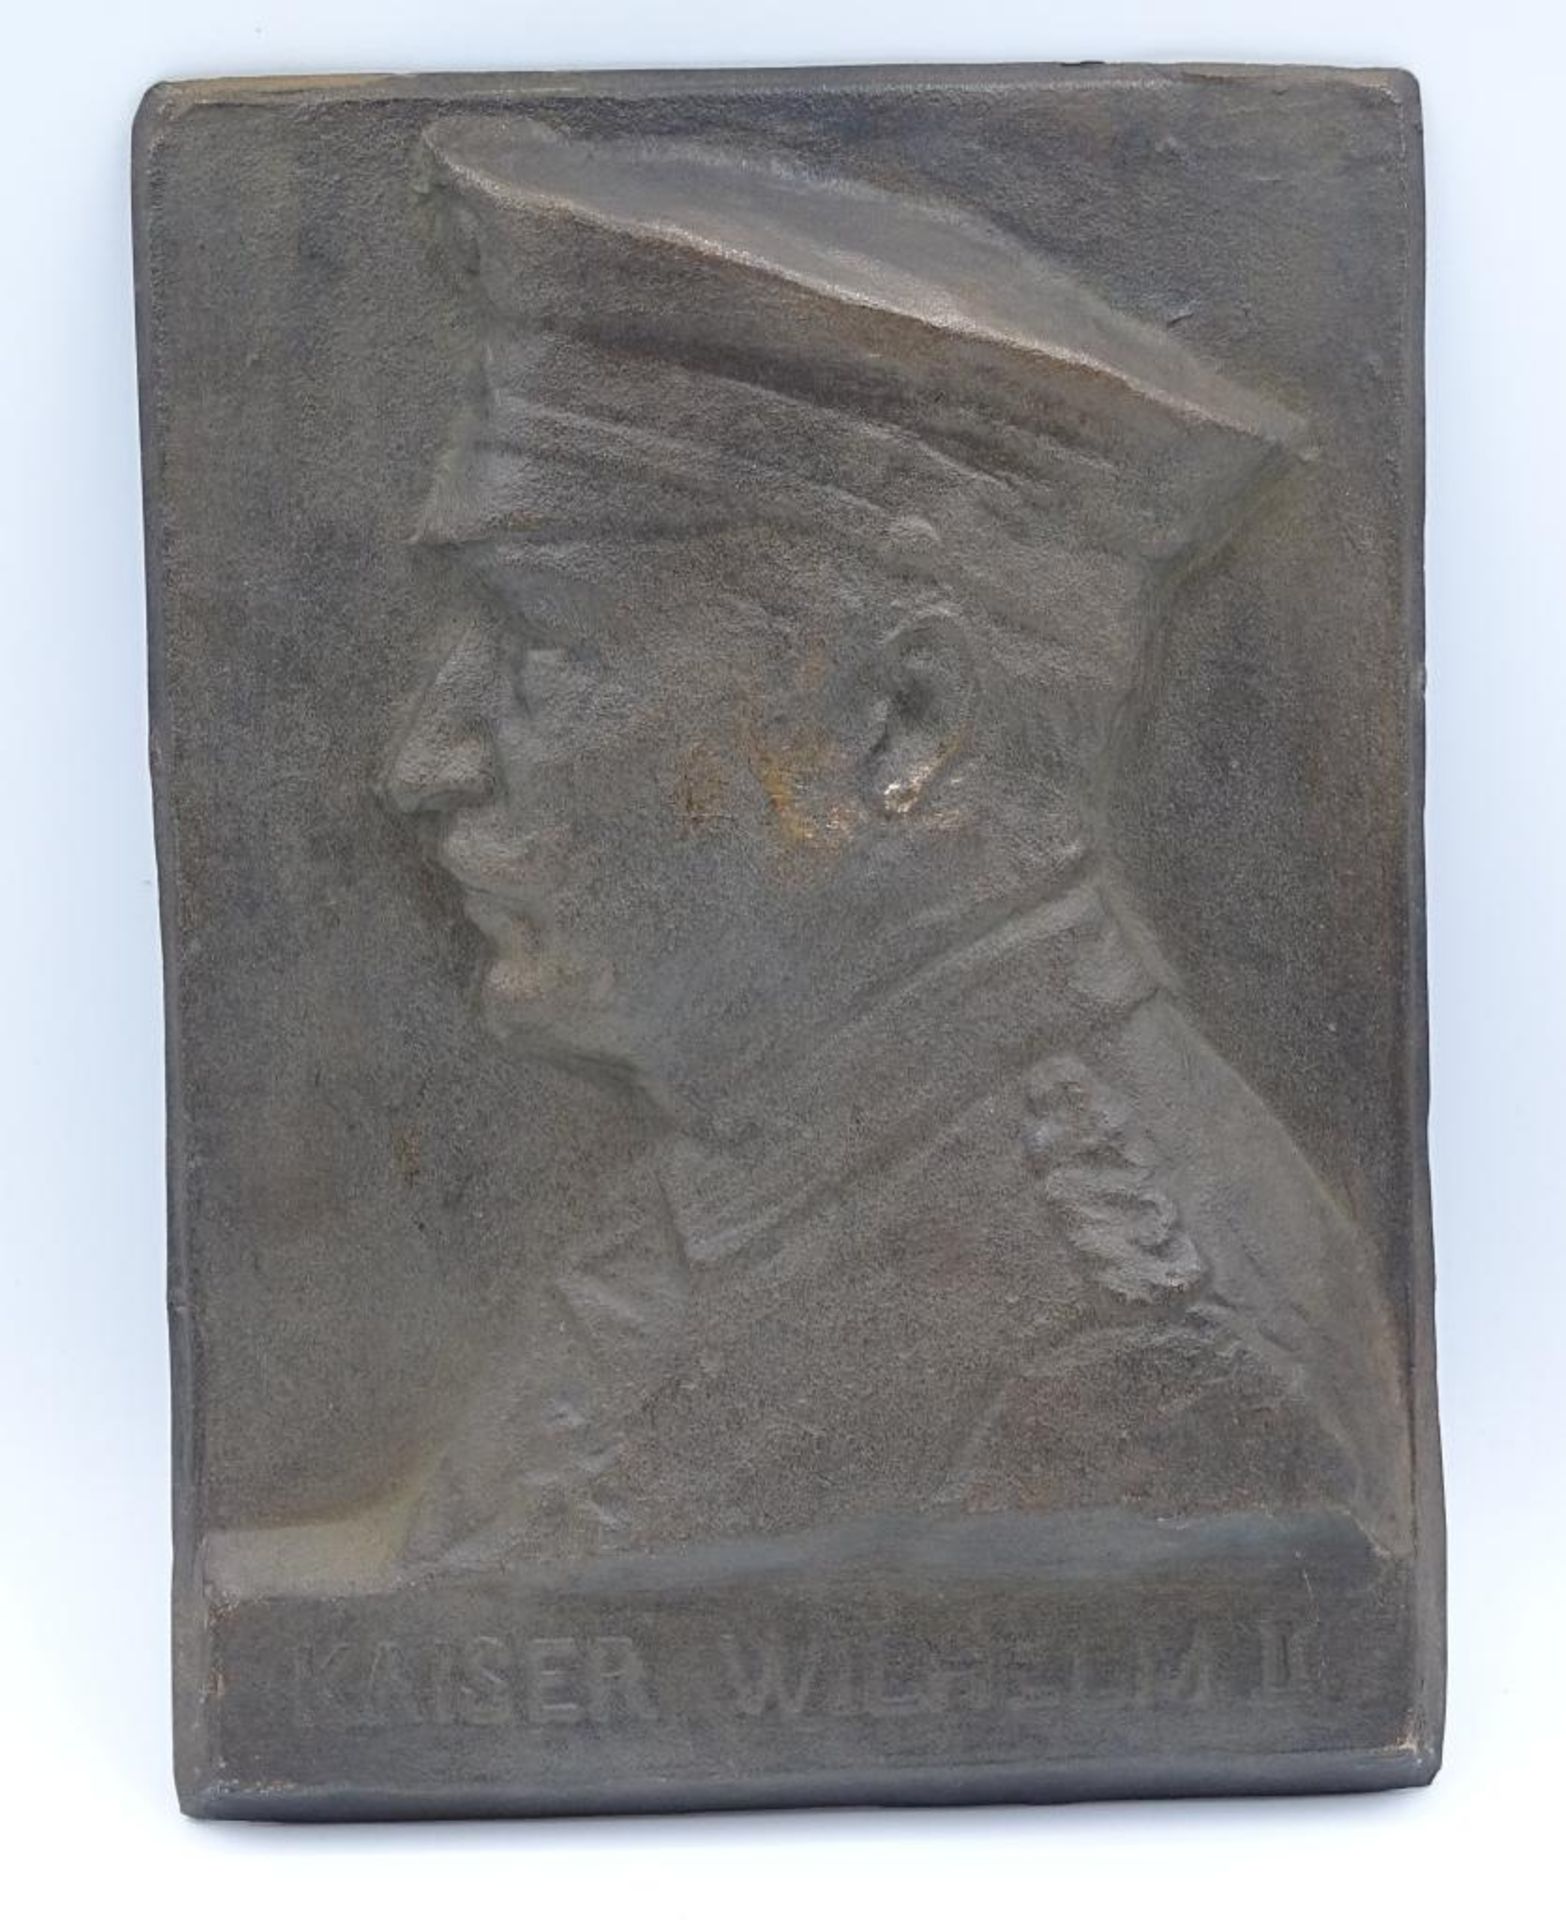 Wand Plakette "Kaiser Wilhelm II",18x13cm